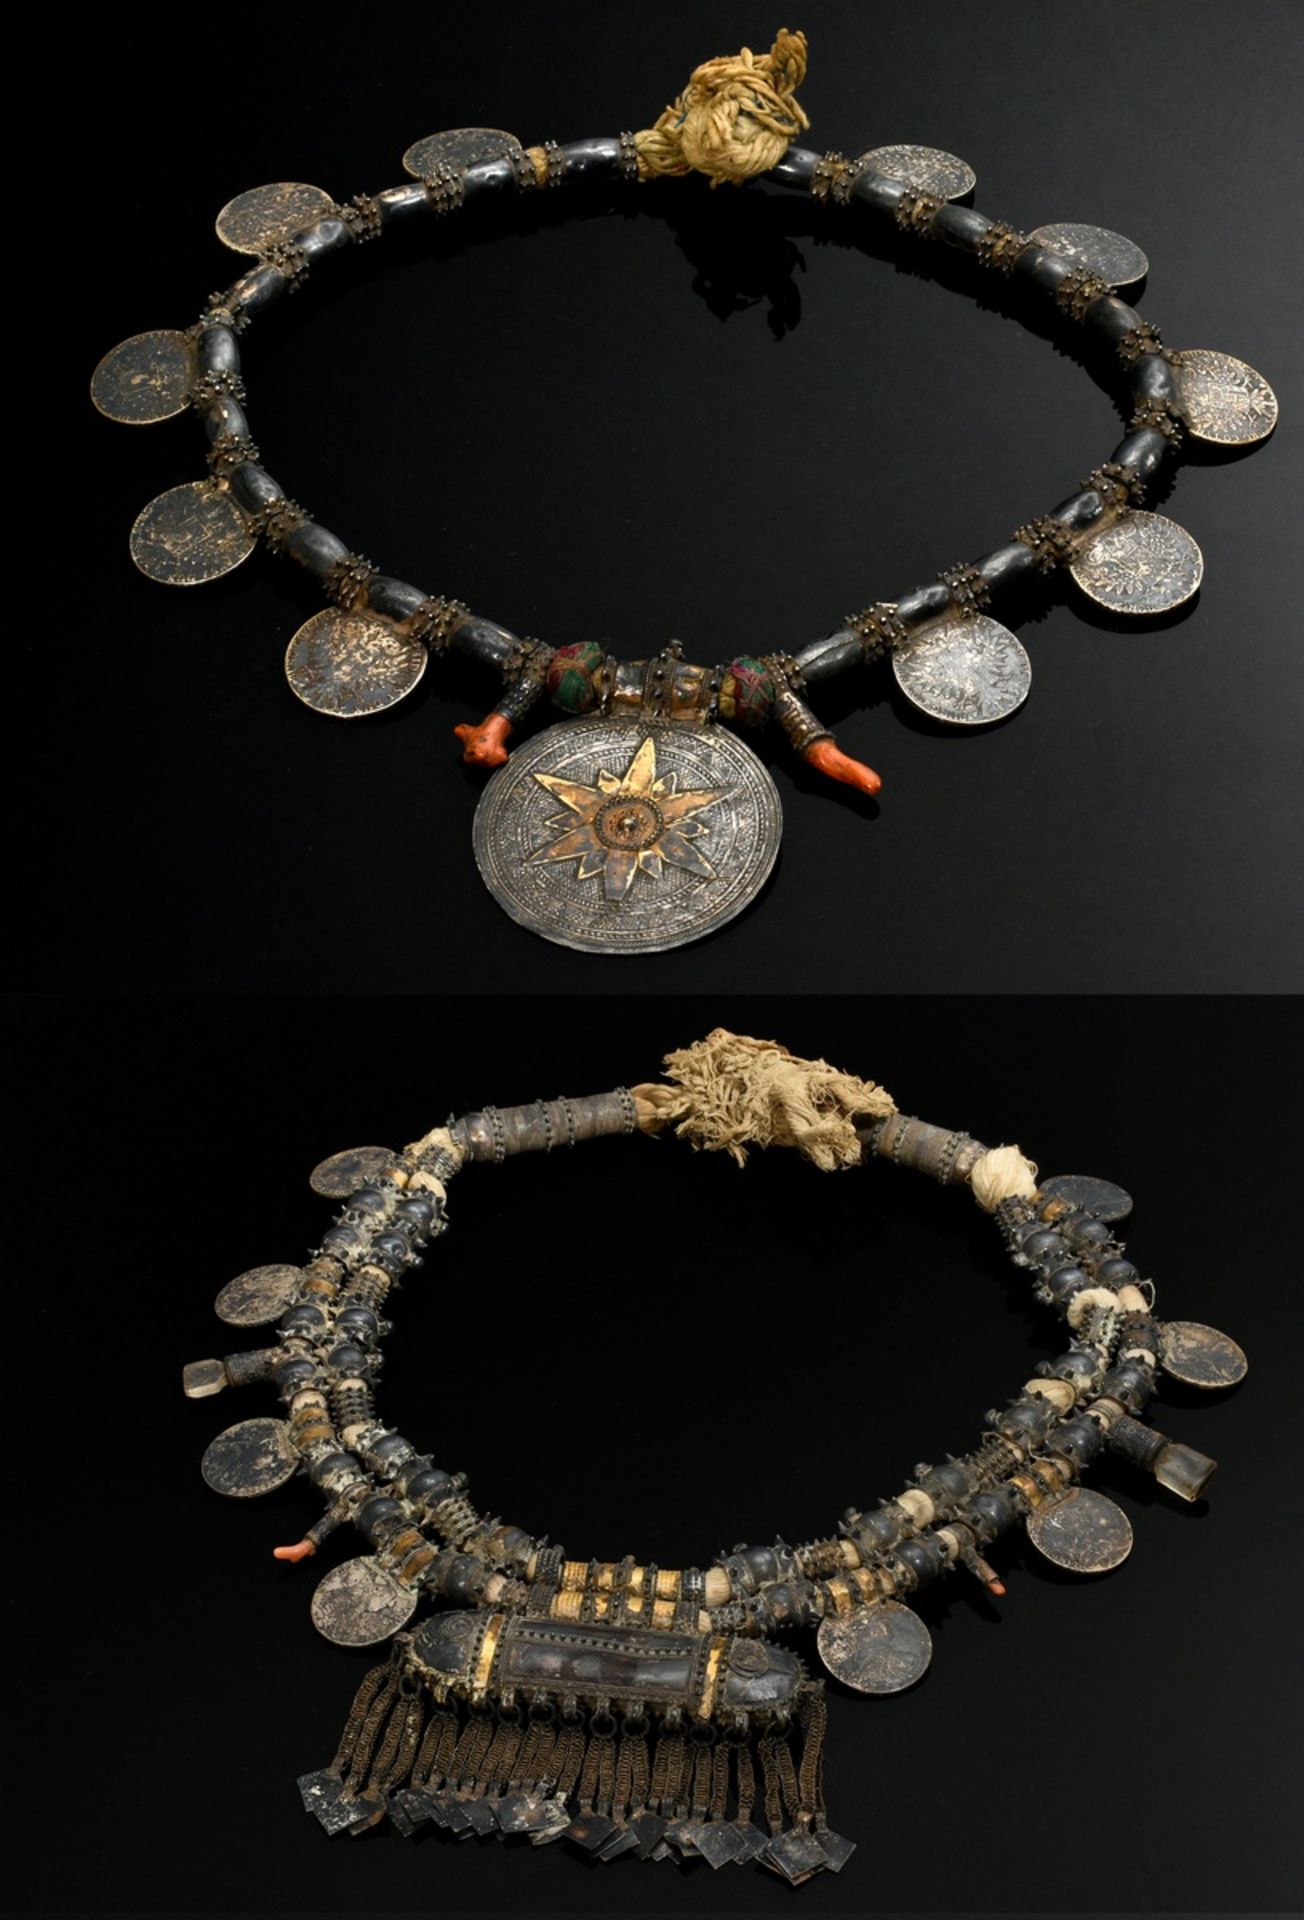 2 Diverse Halsketten "Hirz" oder "Sumpt", Oman Wahiba-Sand-Beduinen, große Stachelperlen mit Maria-